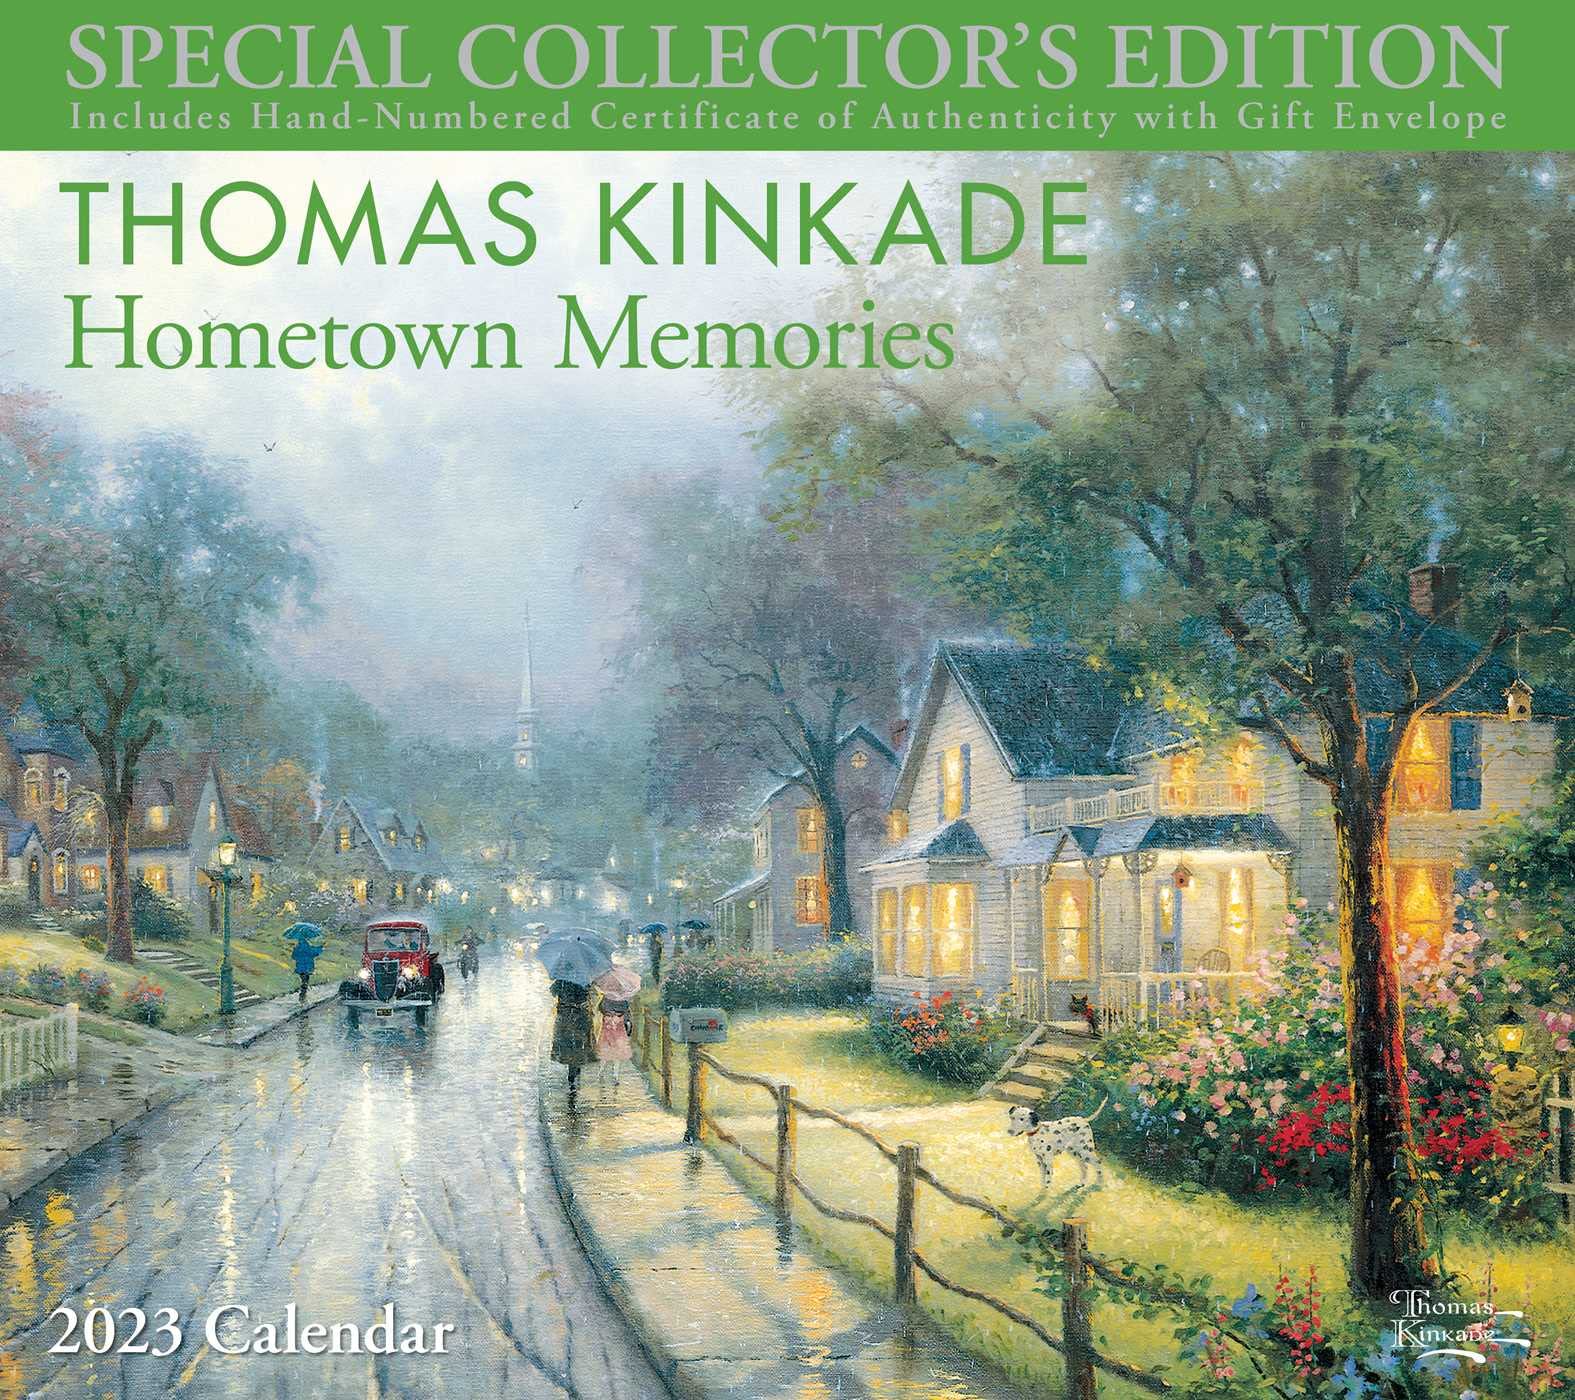 Thomas Kinkade Special Collector's Edition 2023 Wall Calendar